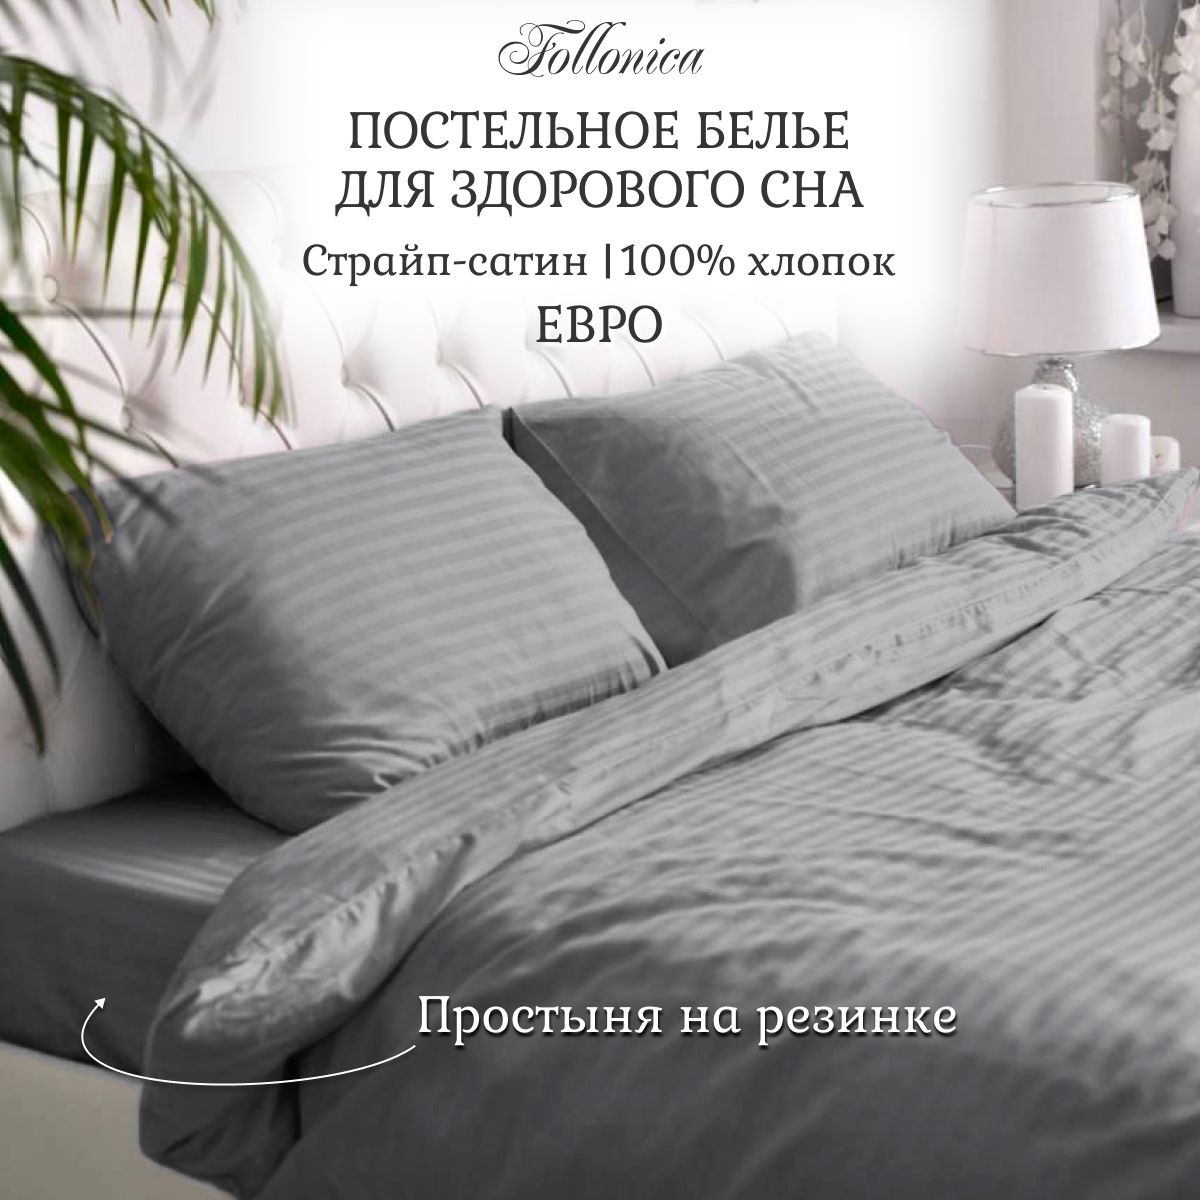 Постельное белье Follonica Stripe, размер евро, цвет светло-серый